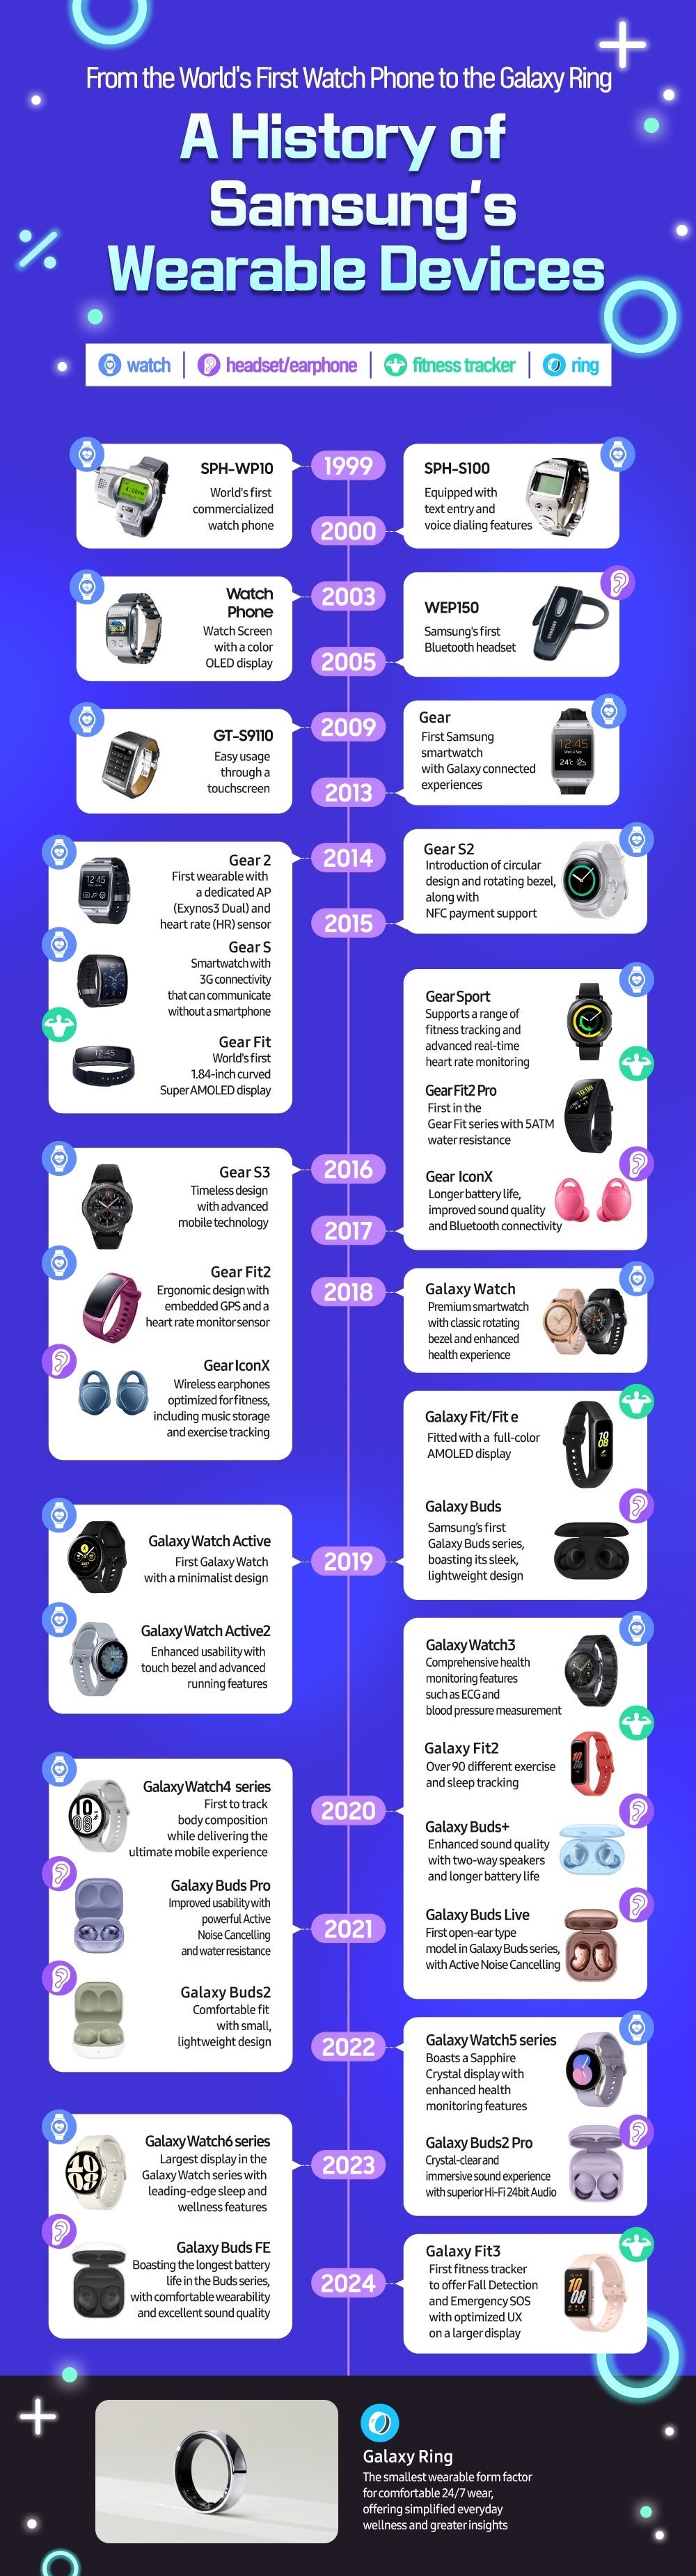 Bilgi grafiği: Samsung'un giyilebilir cihazların 25 yıllık gelişimi